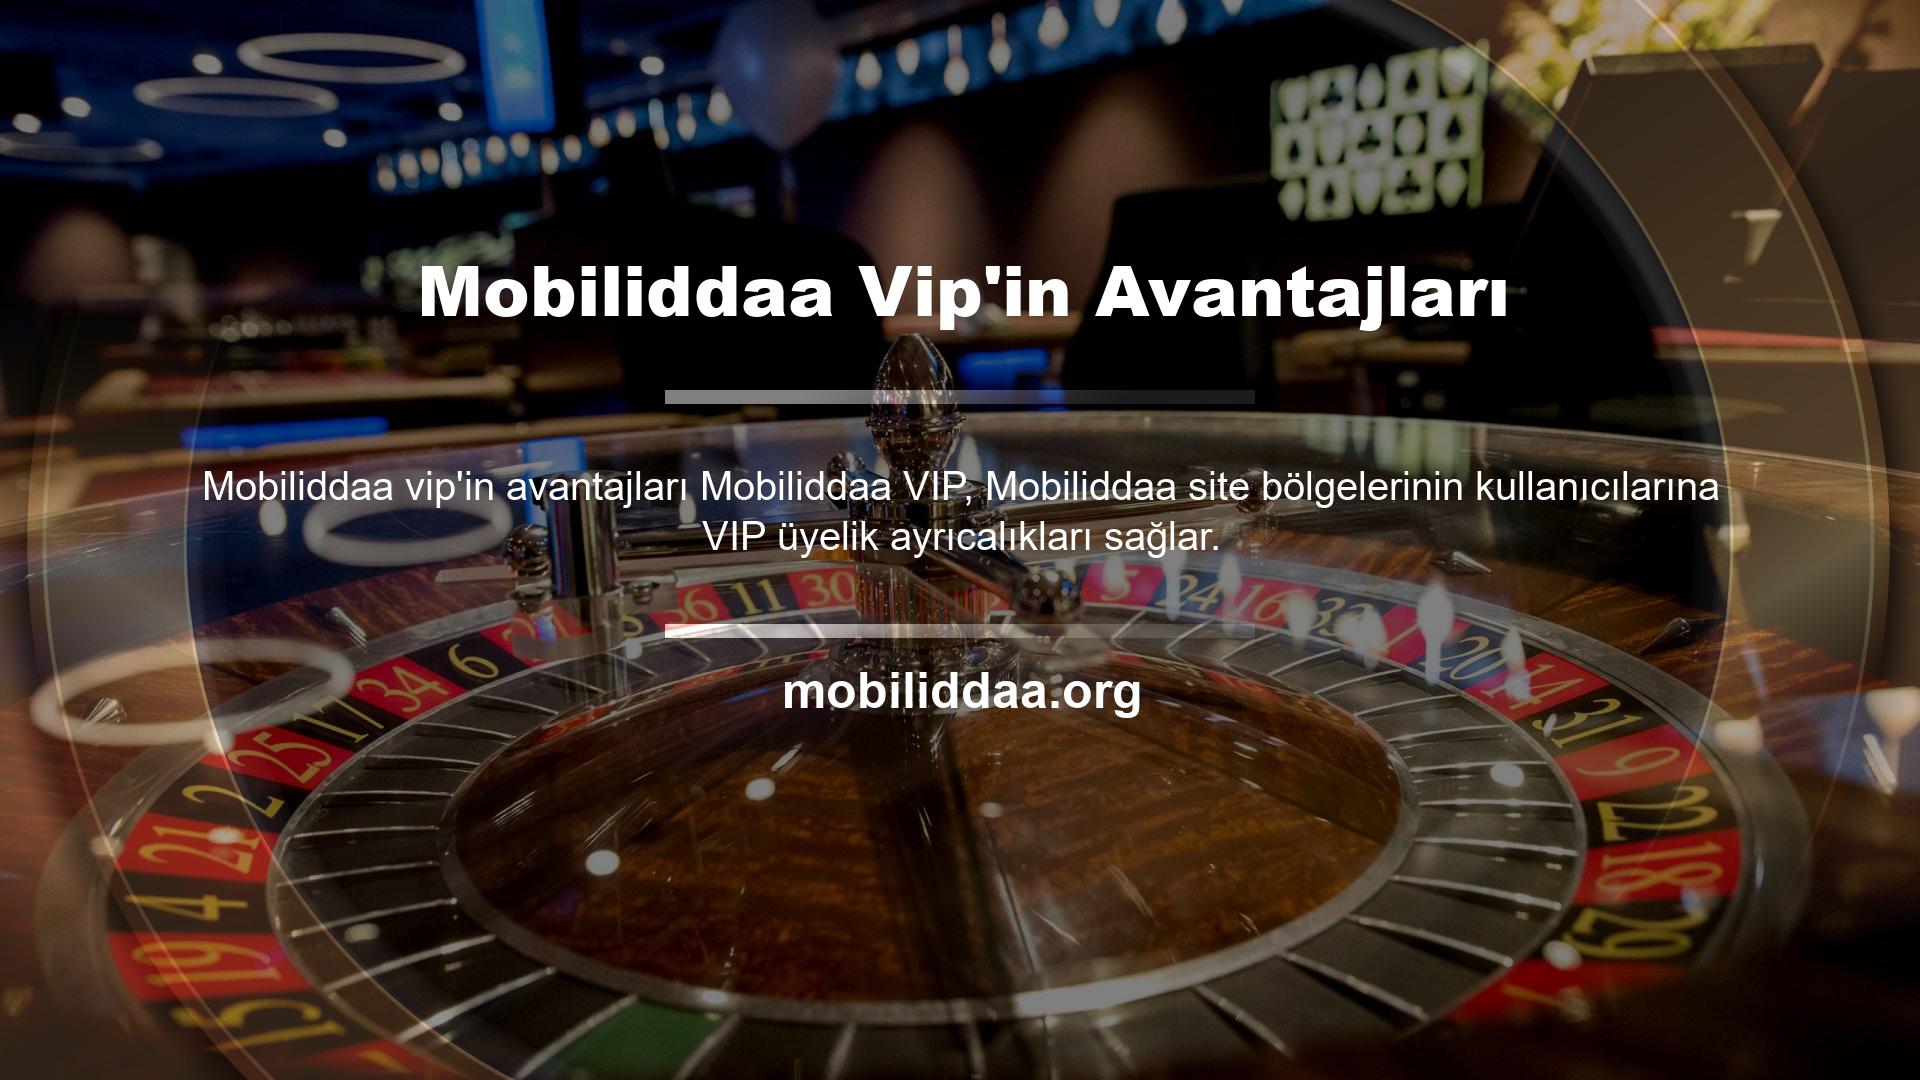 Son zamanlarda birçok kullanıcı Mobiliddaa VIP üyeliğinin neler sunduğunu soruyor